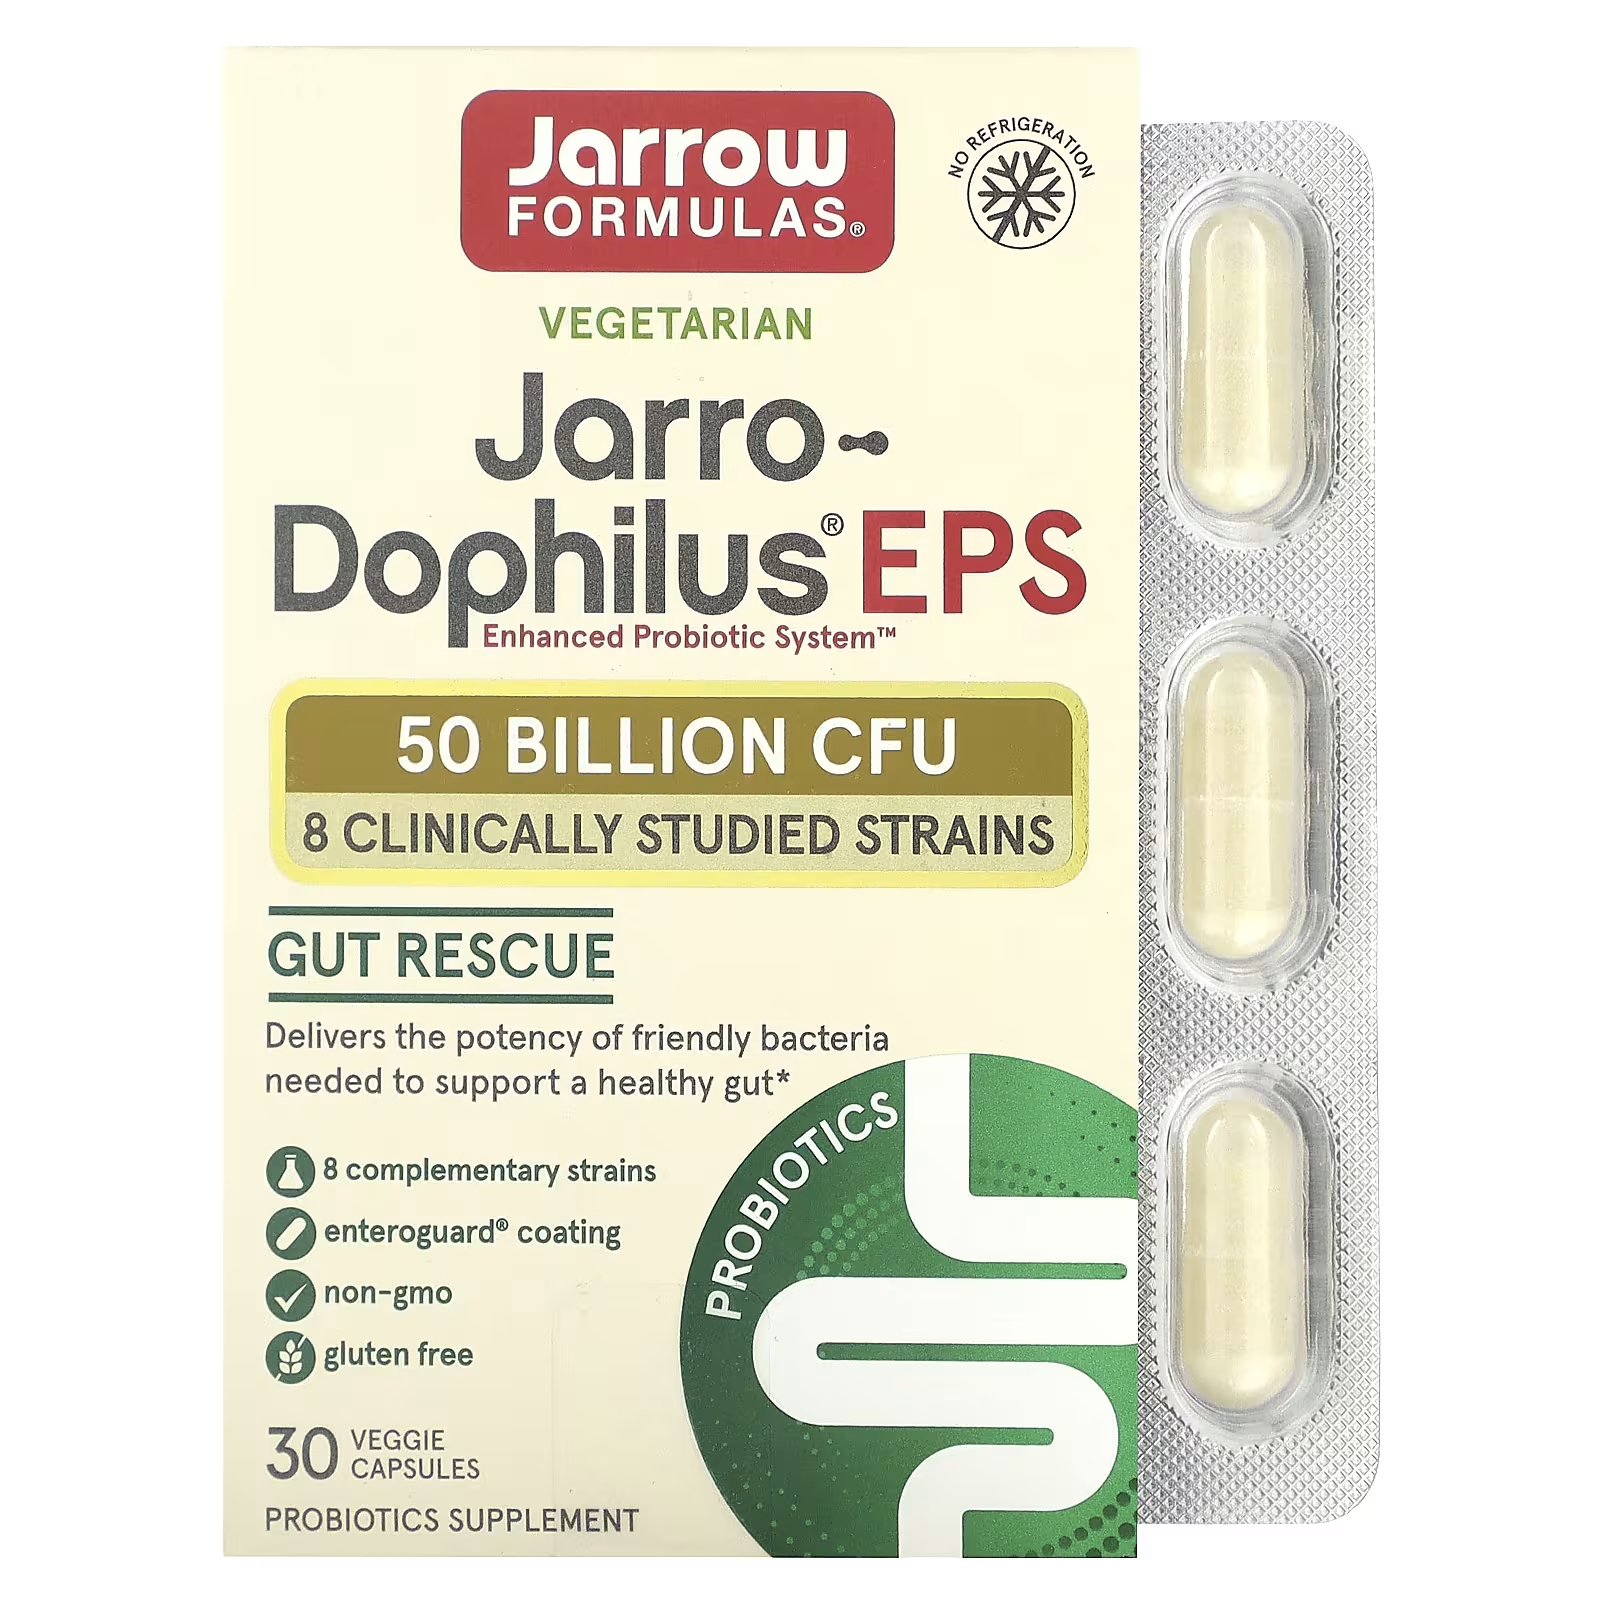 jarrow formulas jarro dophilus fos 100 растительных капсул Добавка с пробиотиком Jarrow Formulas Jarro-Dophilus EPS, 30 растительных капсул